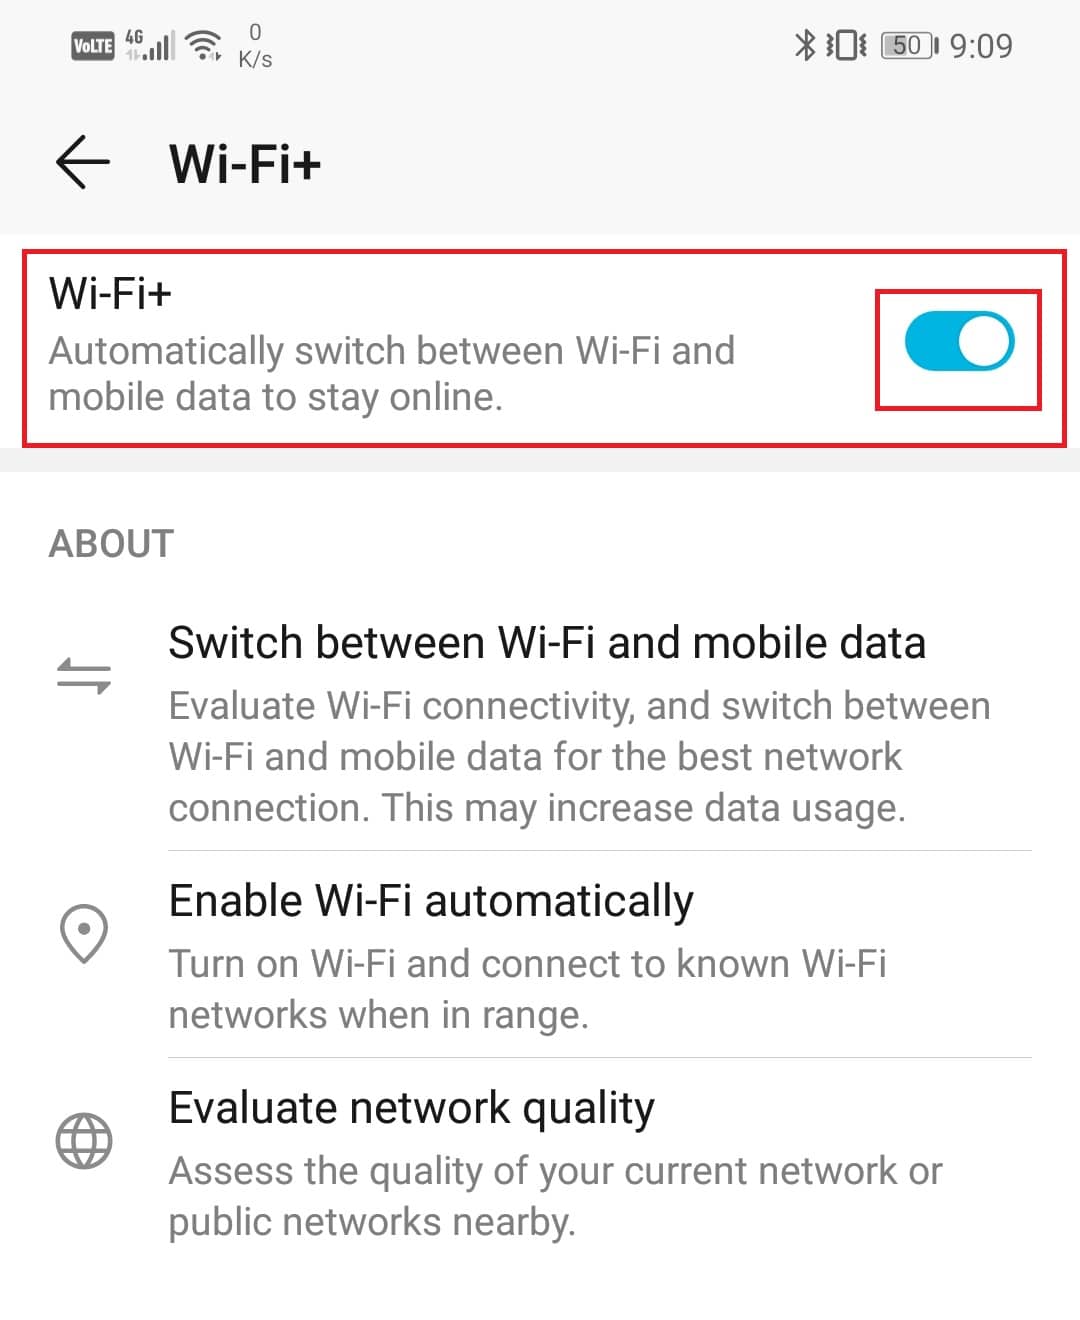 włącz przełącznik obok opcji Wi-Fi+. | wzmocnij sygnał Wi-Fi na Androidzie